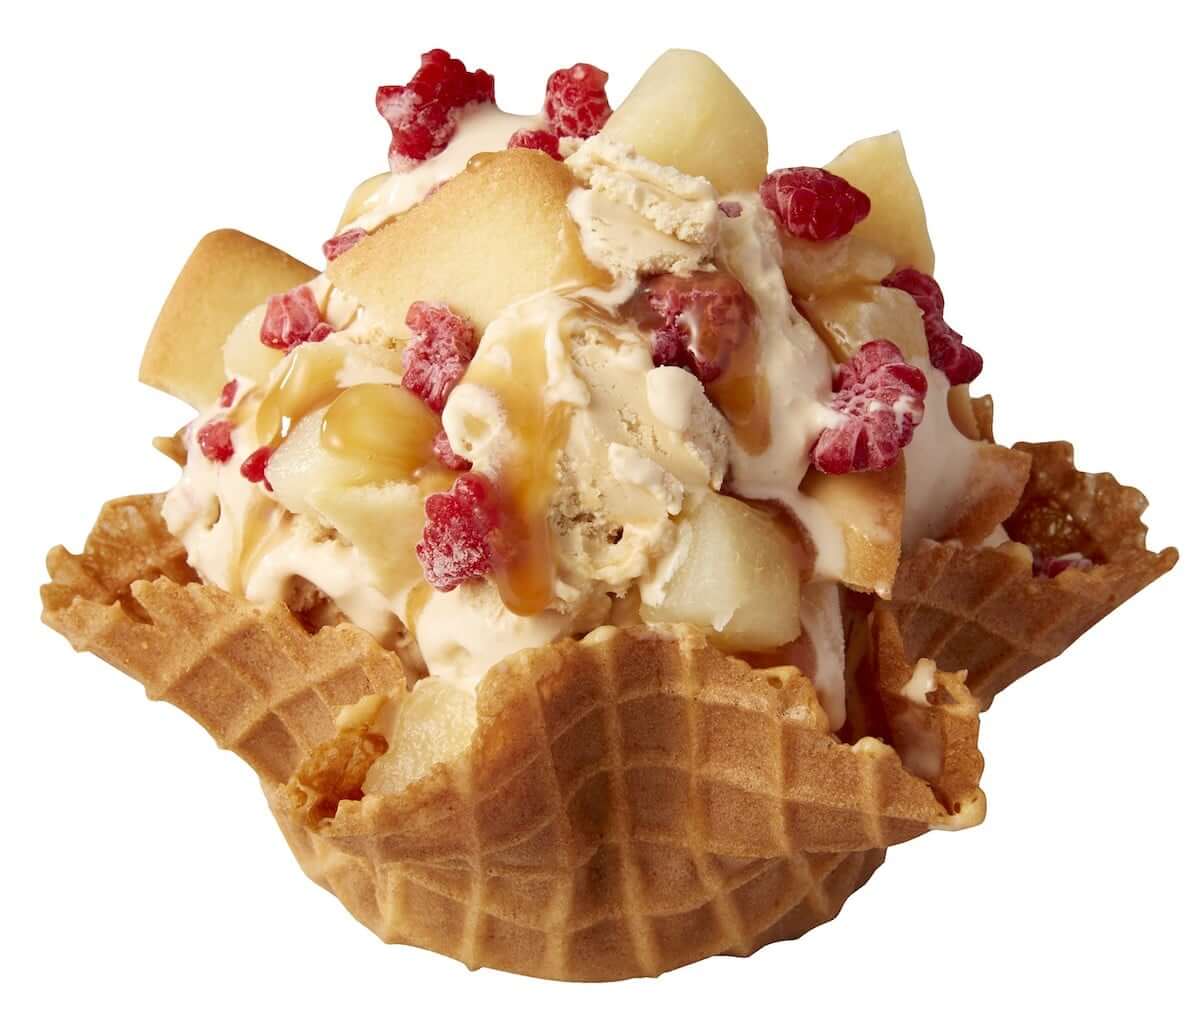 コールドストーン、寒い季節に食べたくなる「濃厚アイスクリーム」3種類を期間限定で発売！！ gourmet181030_coldstone_02-1200x1030